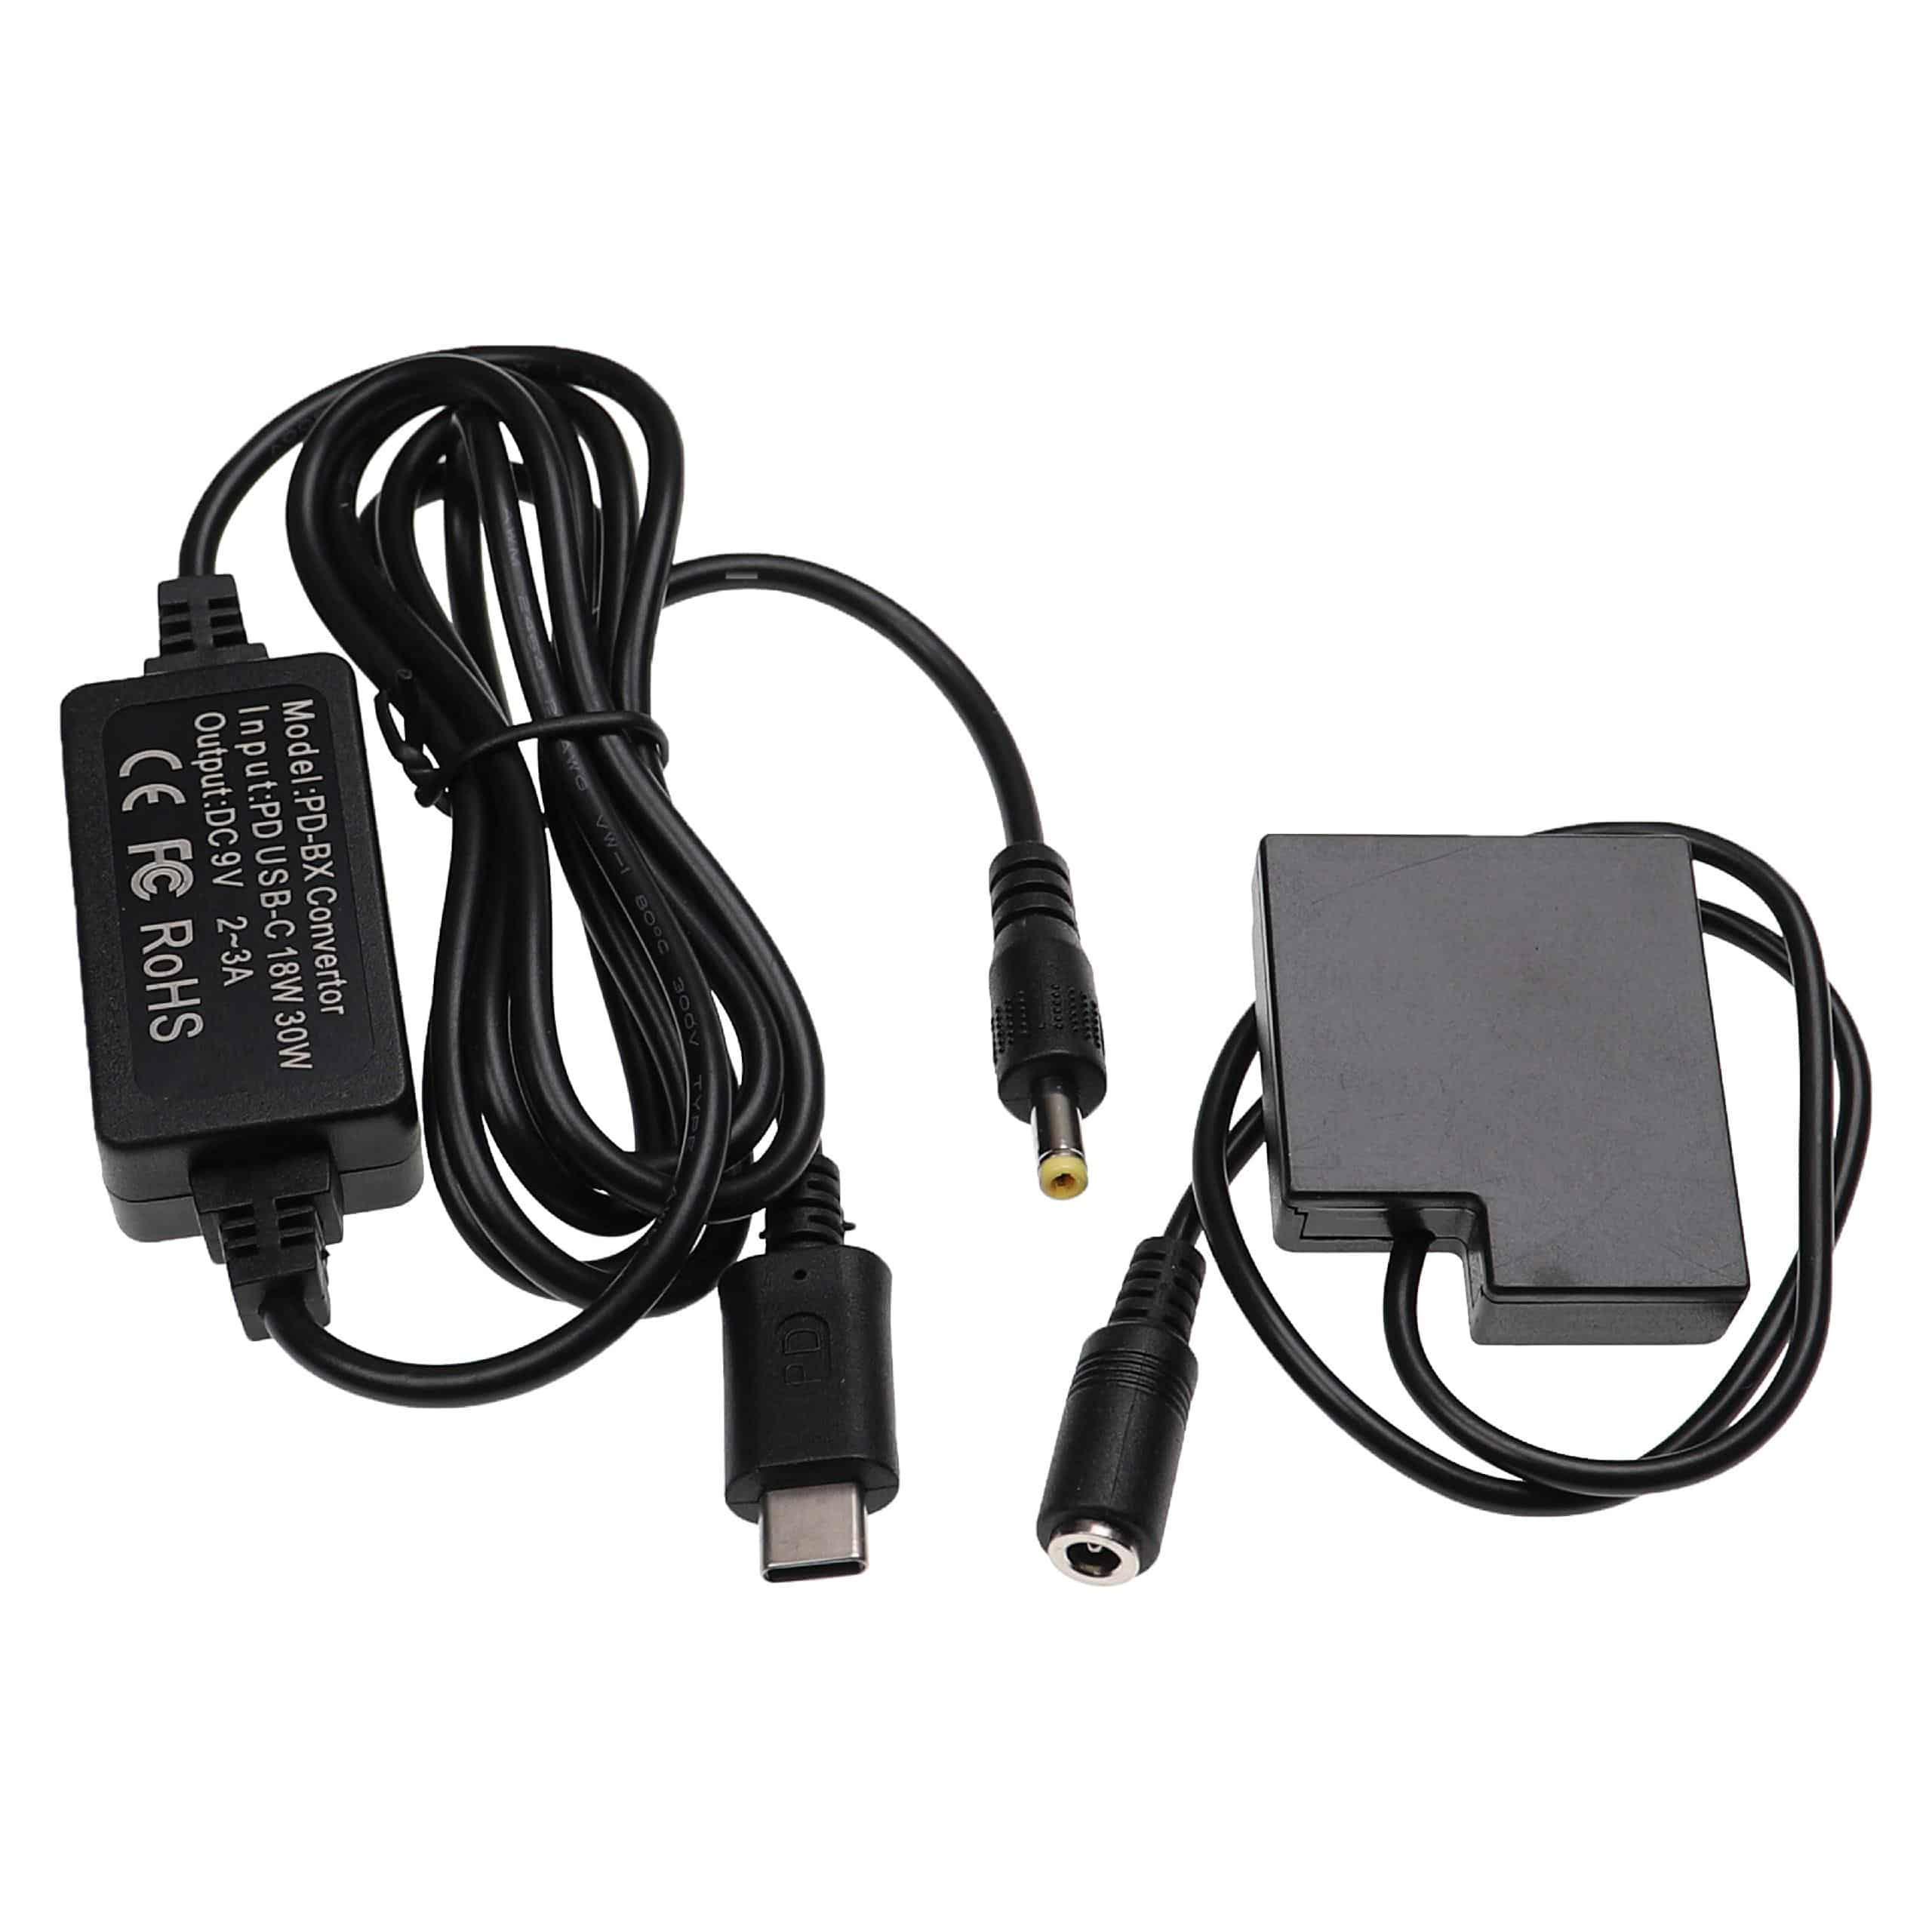 USB Netzteil als Ersatz für Panasonic DMW-AC8 für Kamera + DC Kuppler ersetzt Panasonic DMW-DCC15